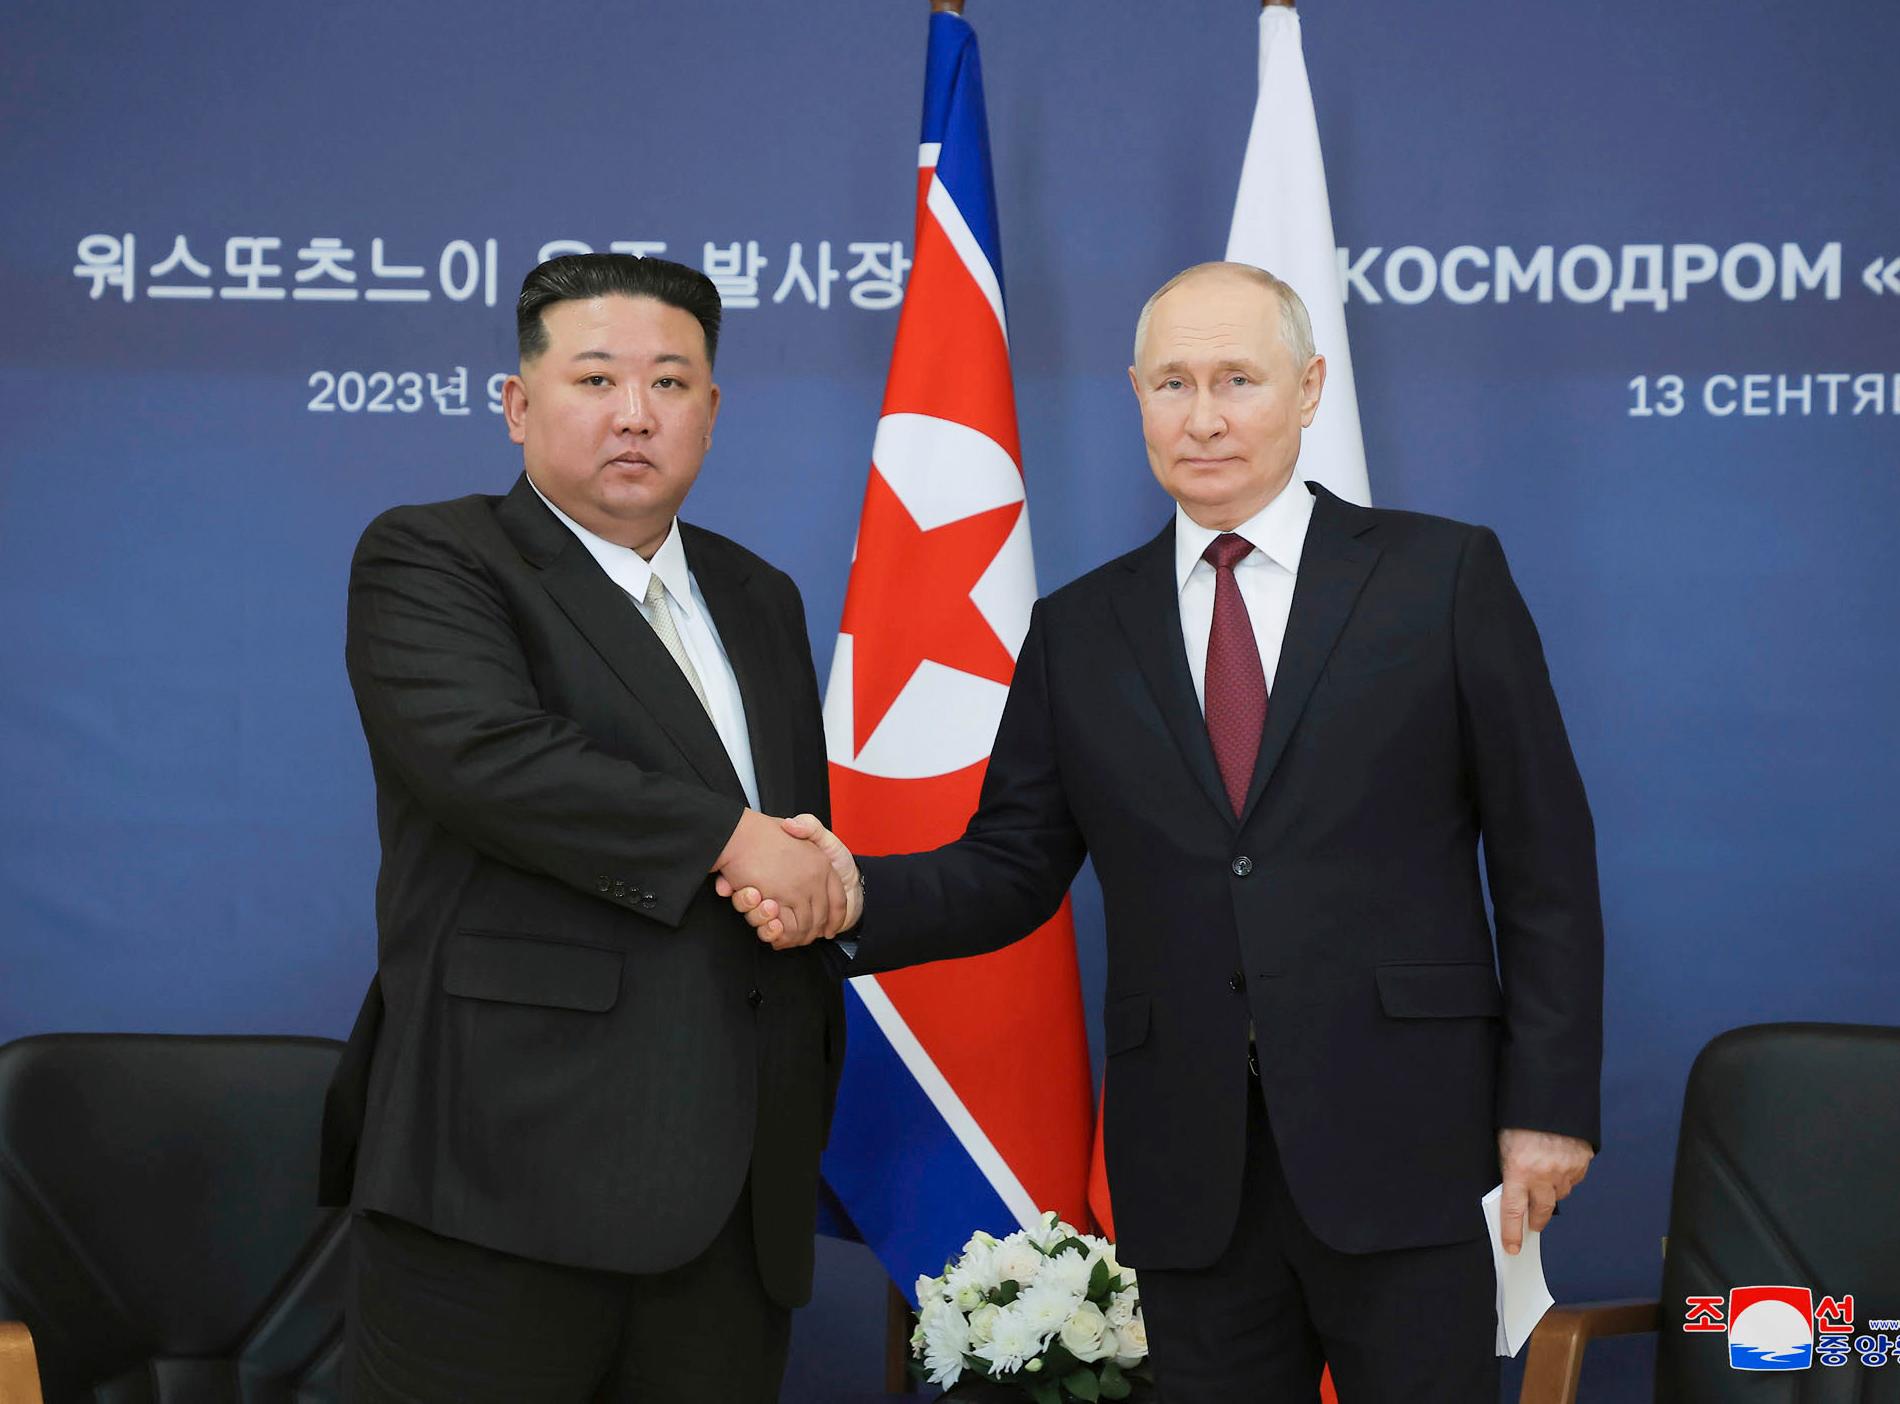 Nordkorea: Putin är redo att besöka oss